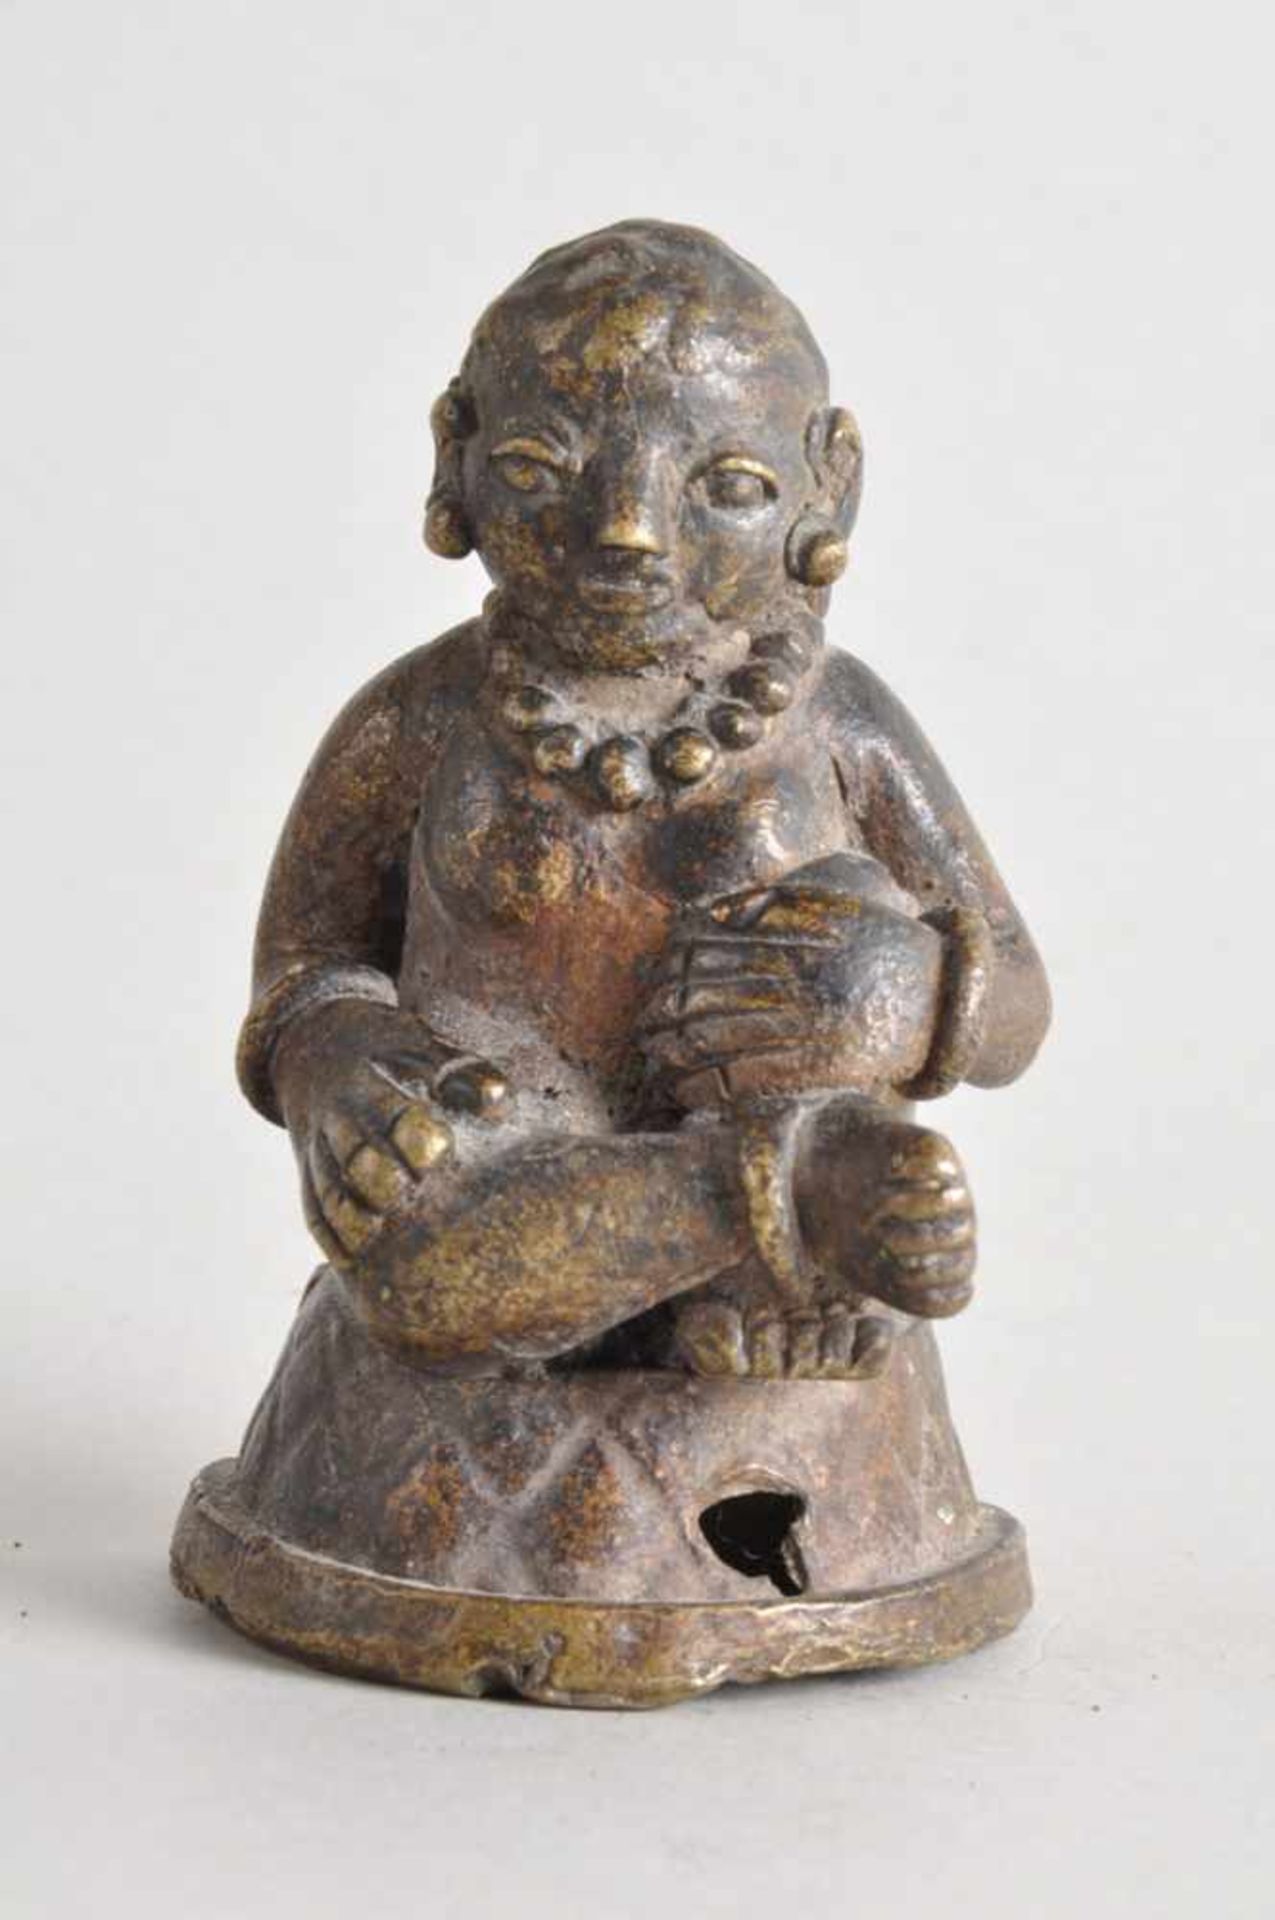 Asiatische Heiligenfigur, Fruchtbarkeitsfigur.Bronze massiv, wohl 17./18. Jahrhundert. Höhe ca. 10